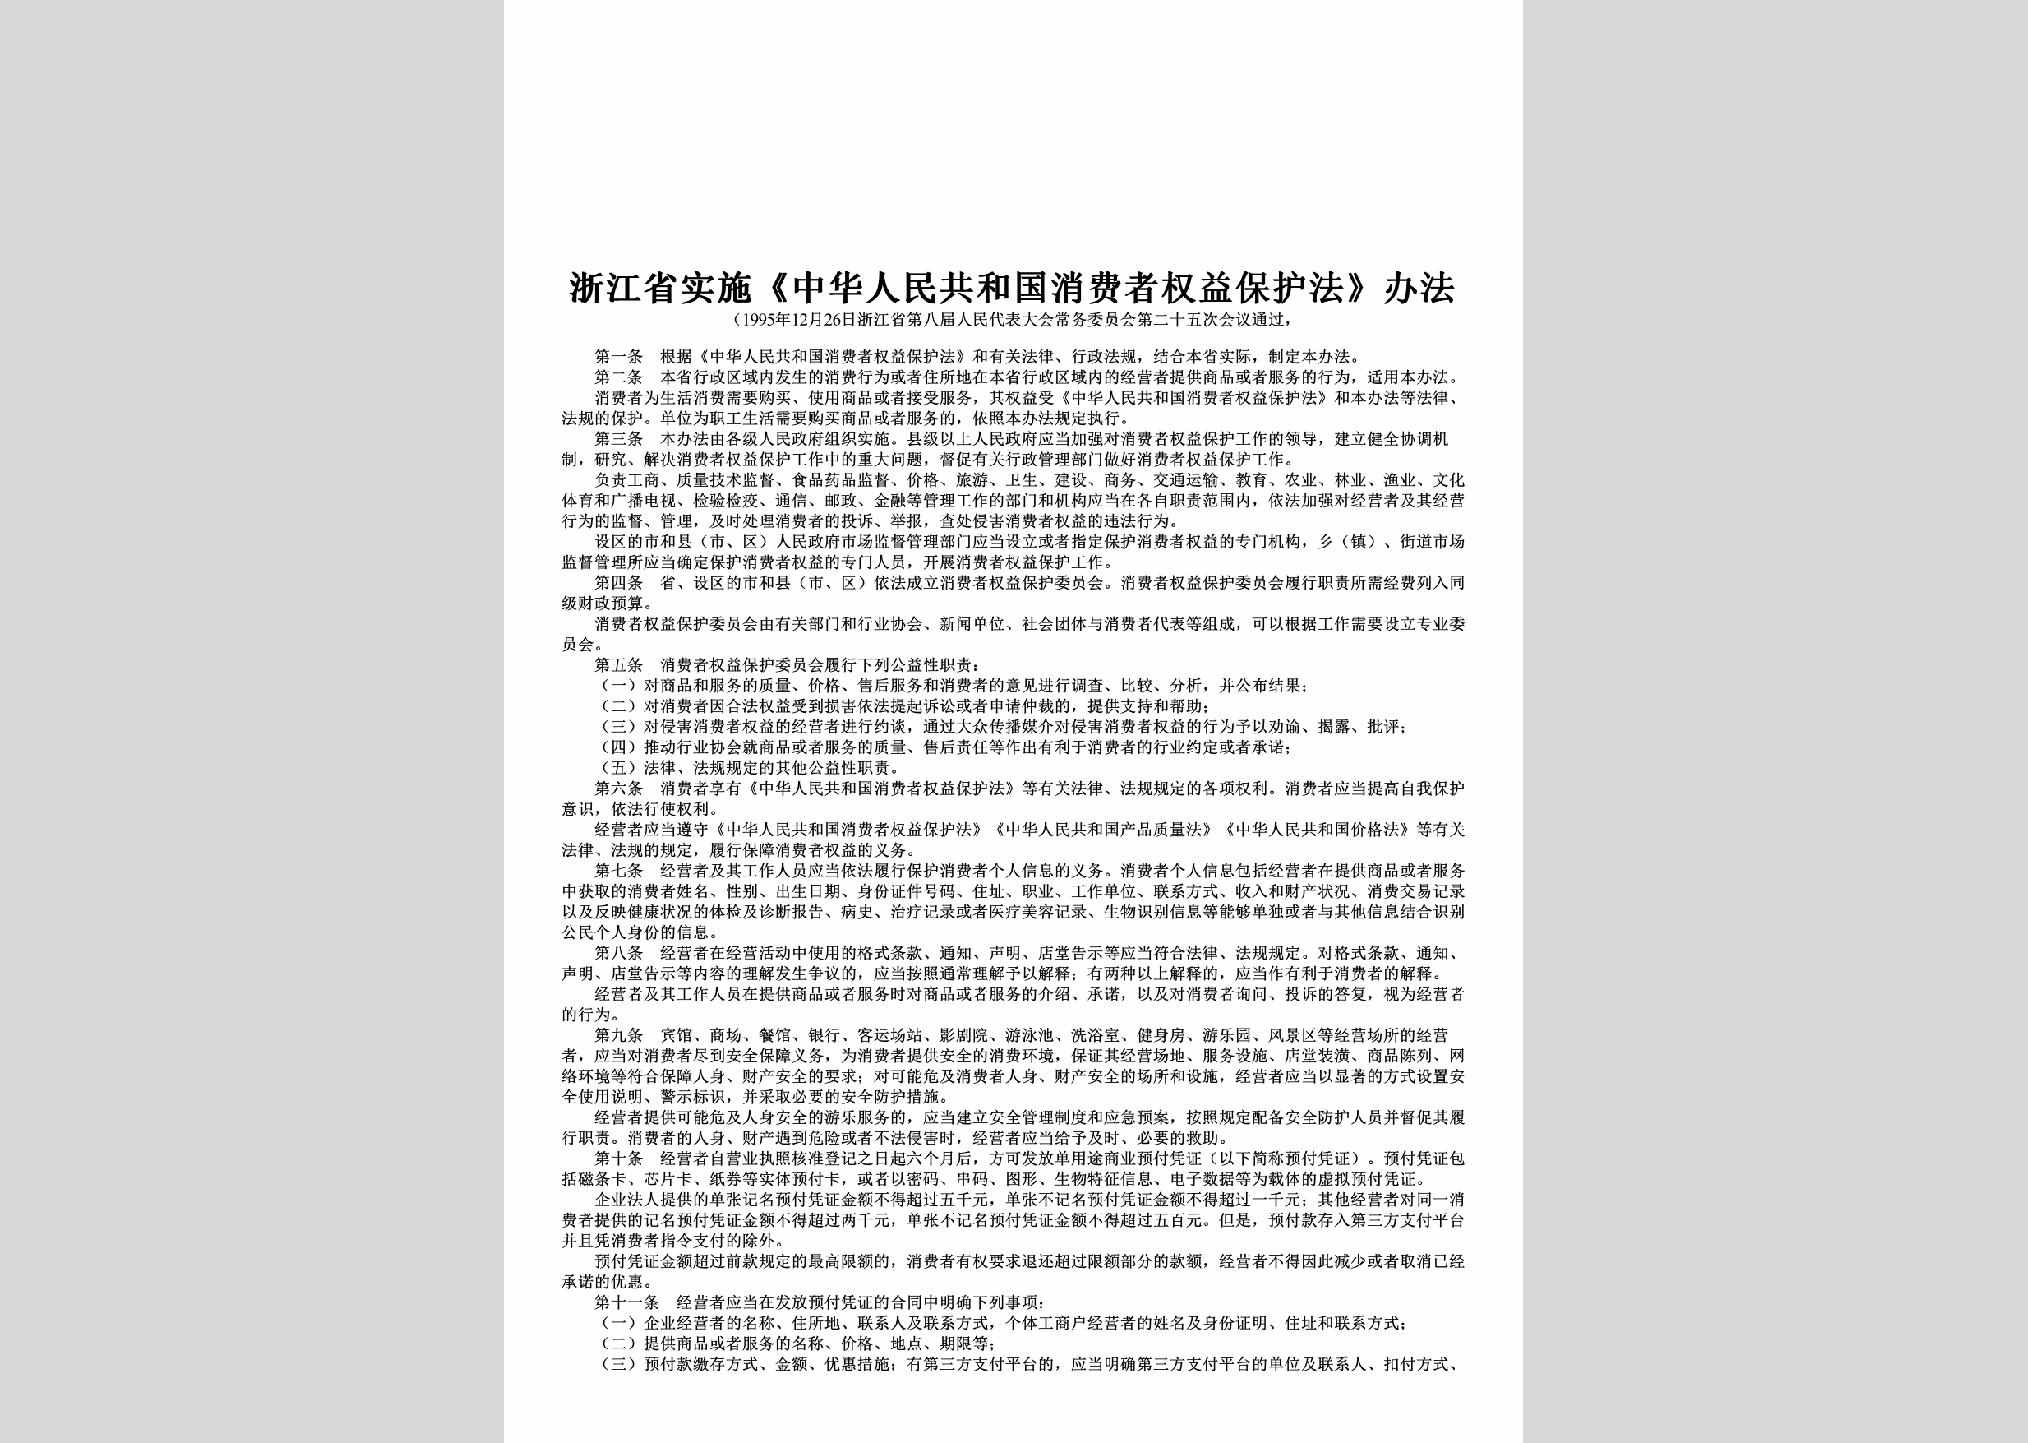 ZJ-SSZHRMG-2017：浙江省实施《中华人民共和国消费者权益保护法》办法